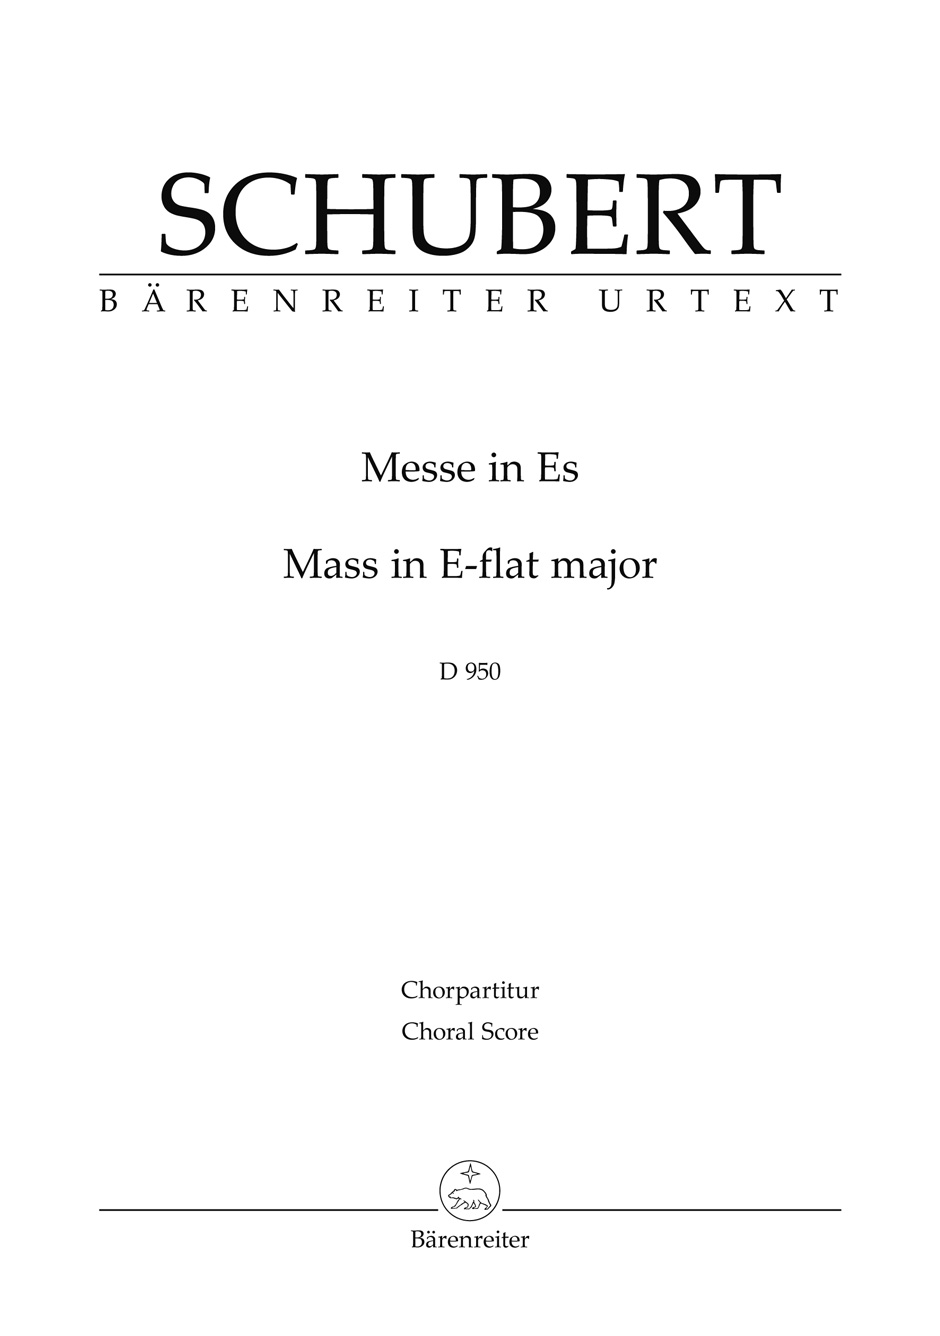 Schubert Mass In E-flat Major D 950 Choral Score Sheet Music Songbook